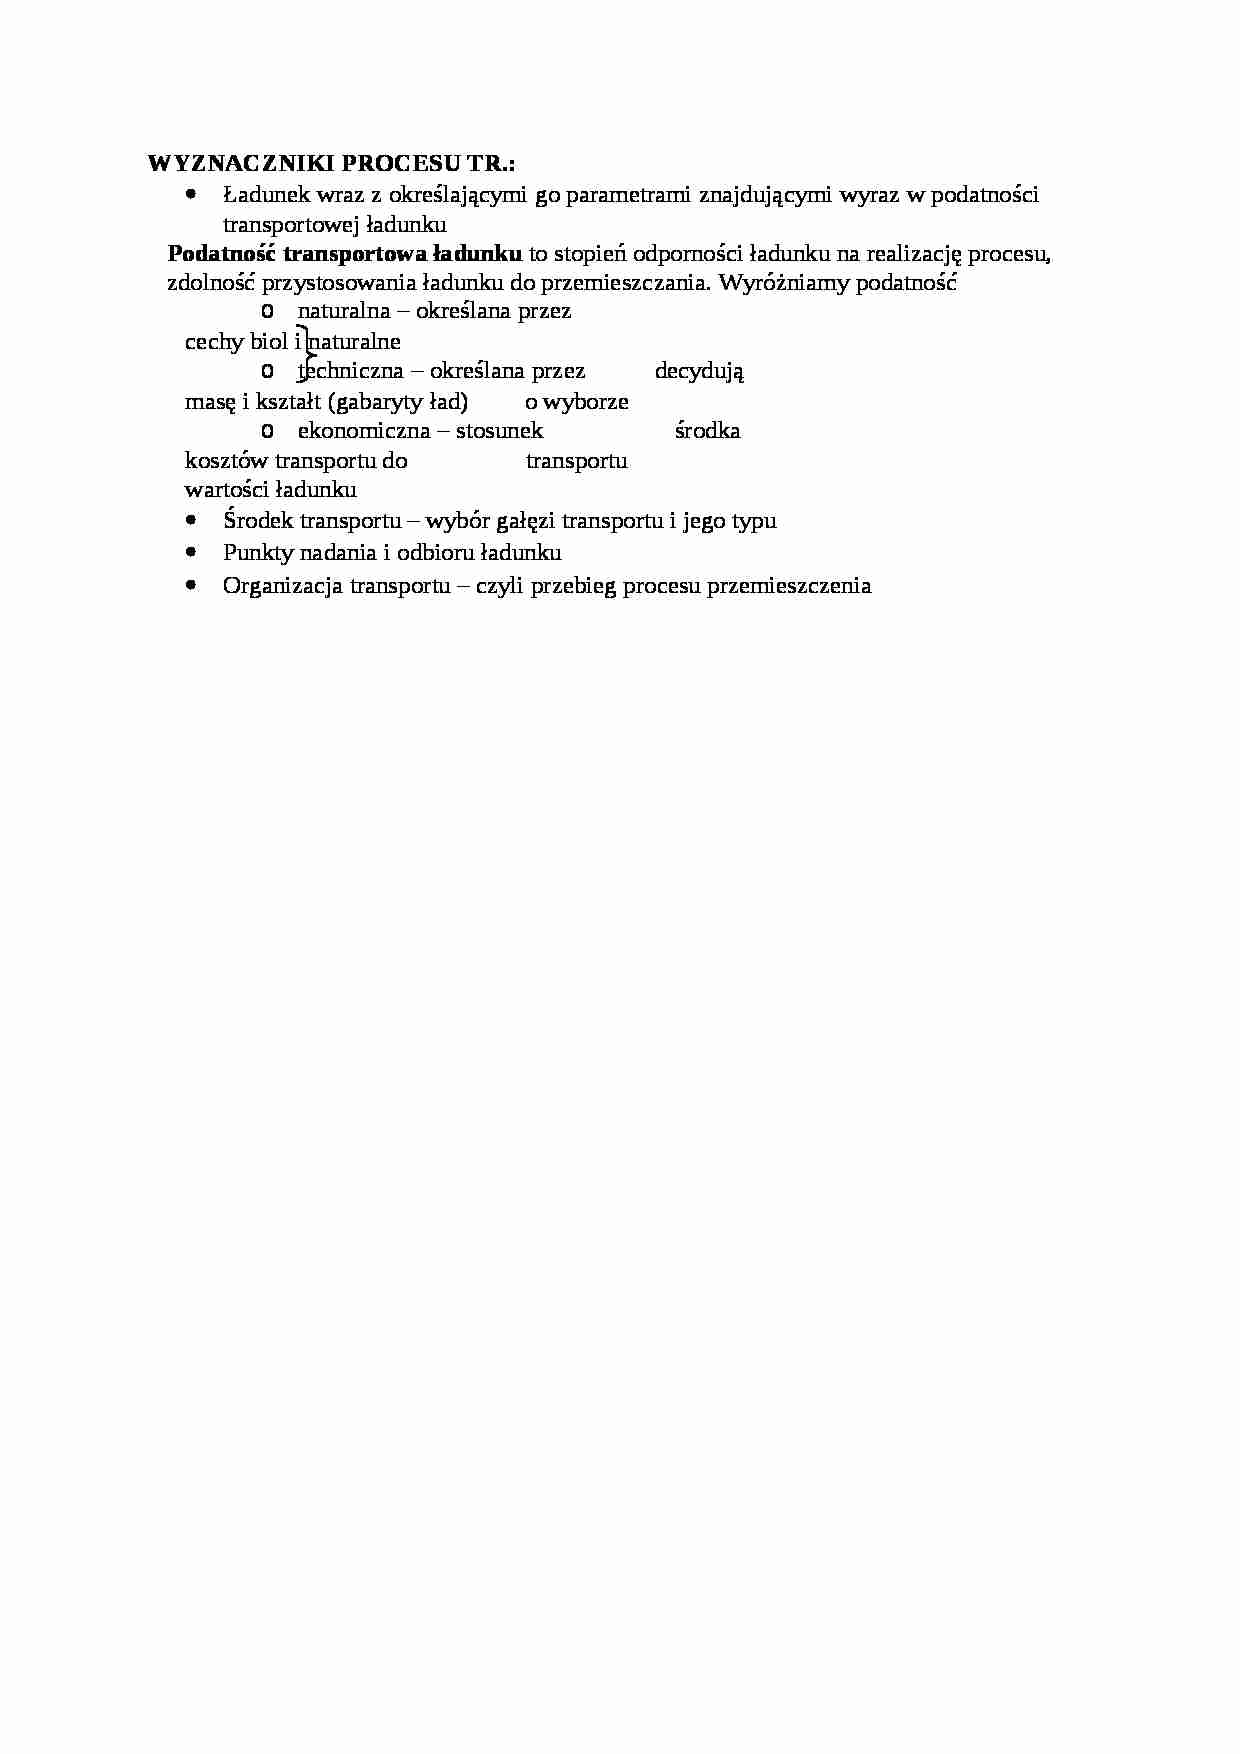 Wyznaczniki procesu transportu - opis - strona 1